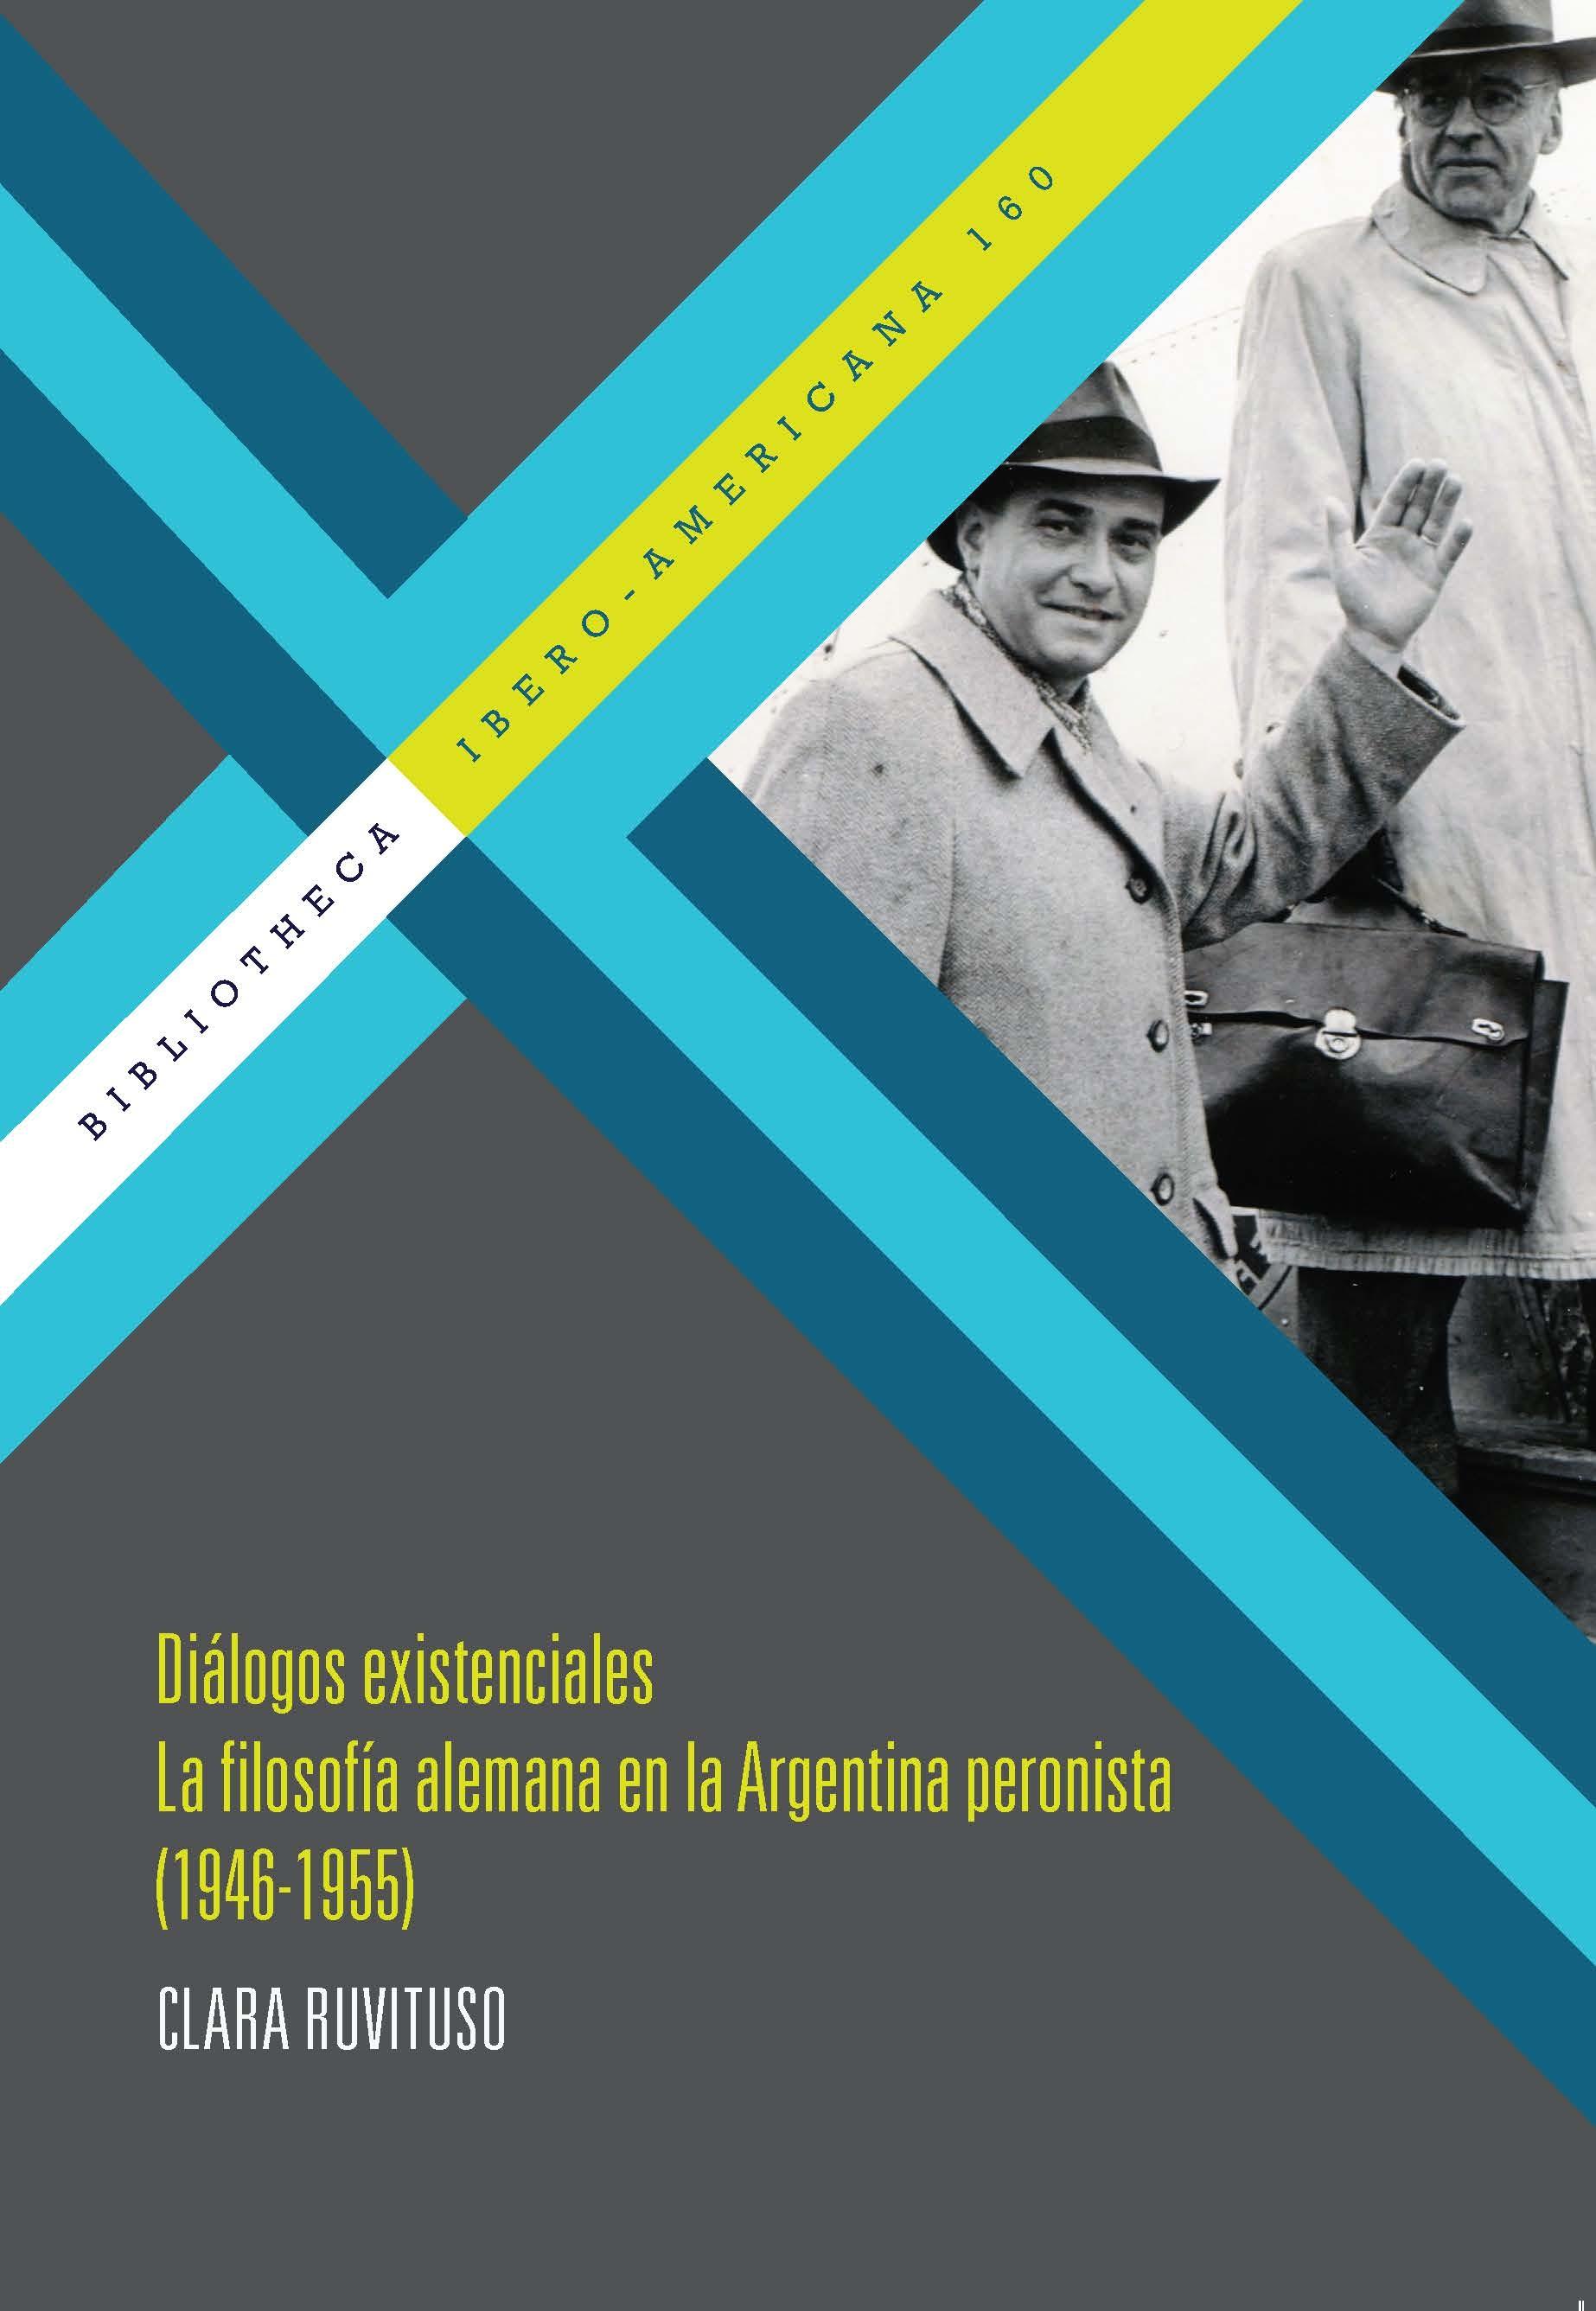 Diálogos existenciales. "La filosofía alemana en la Argentina peronista (1946-1955)."